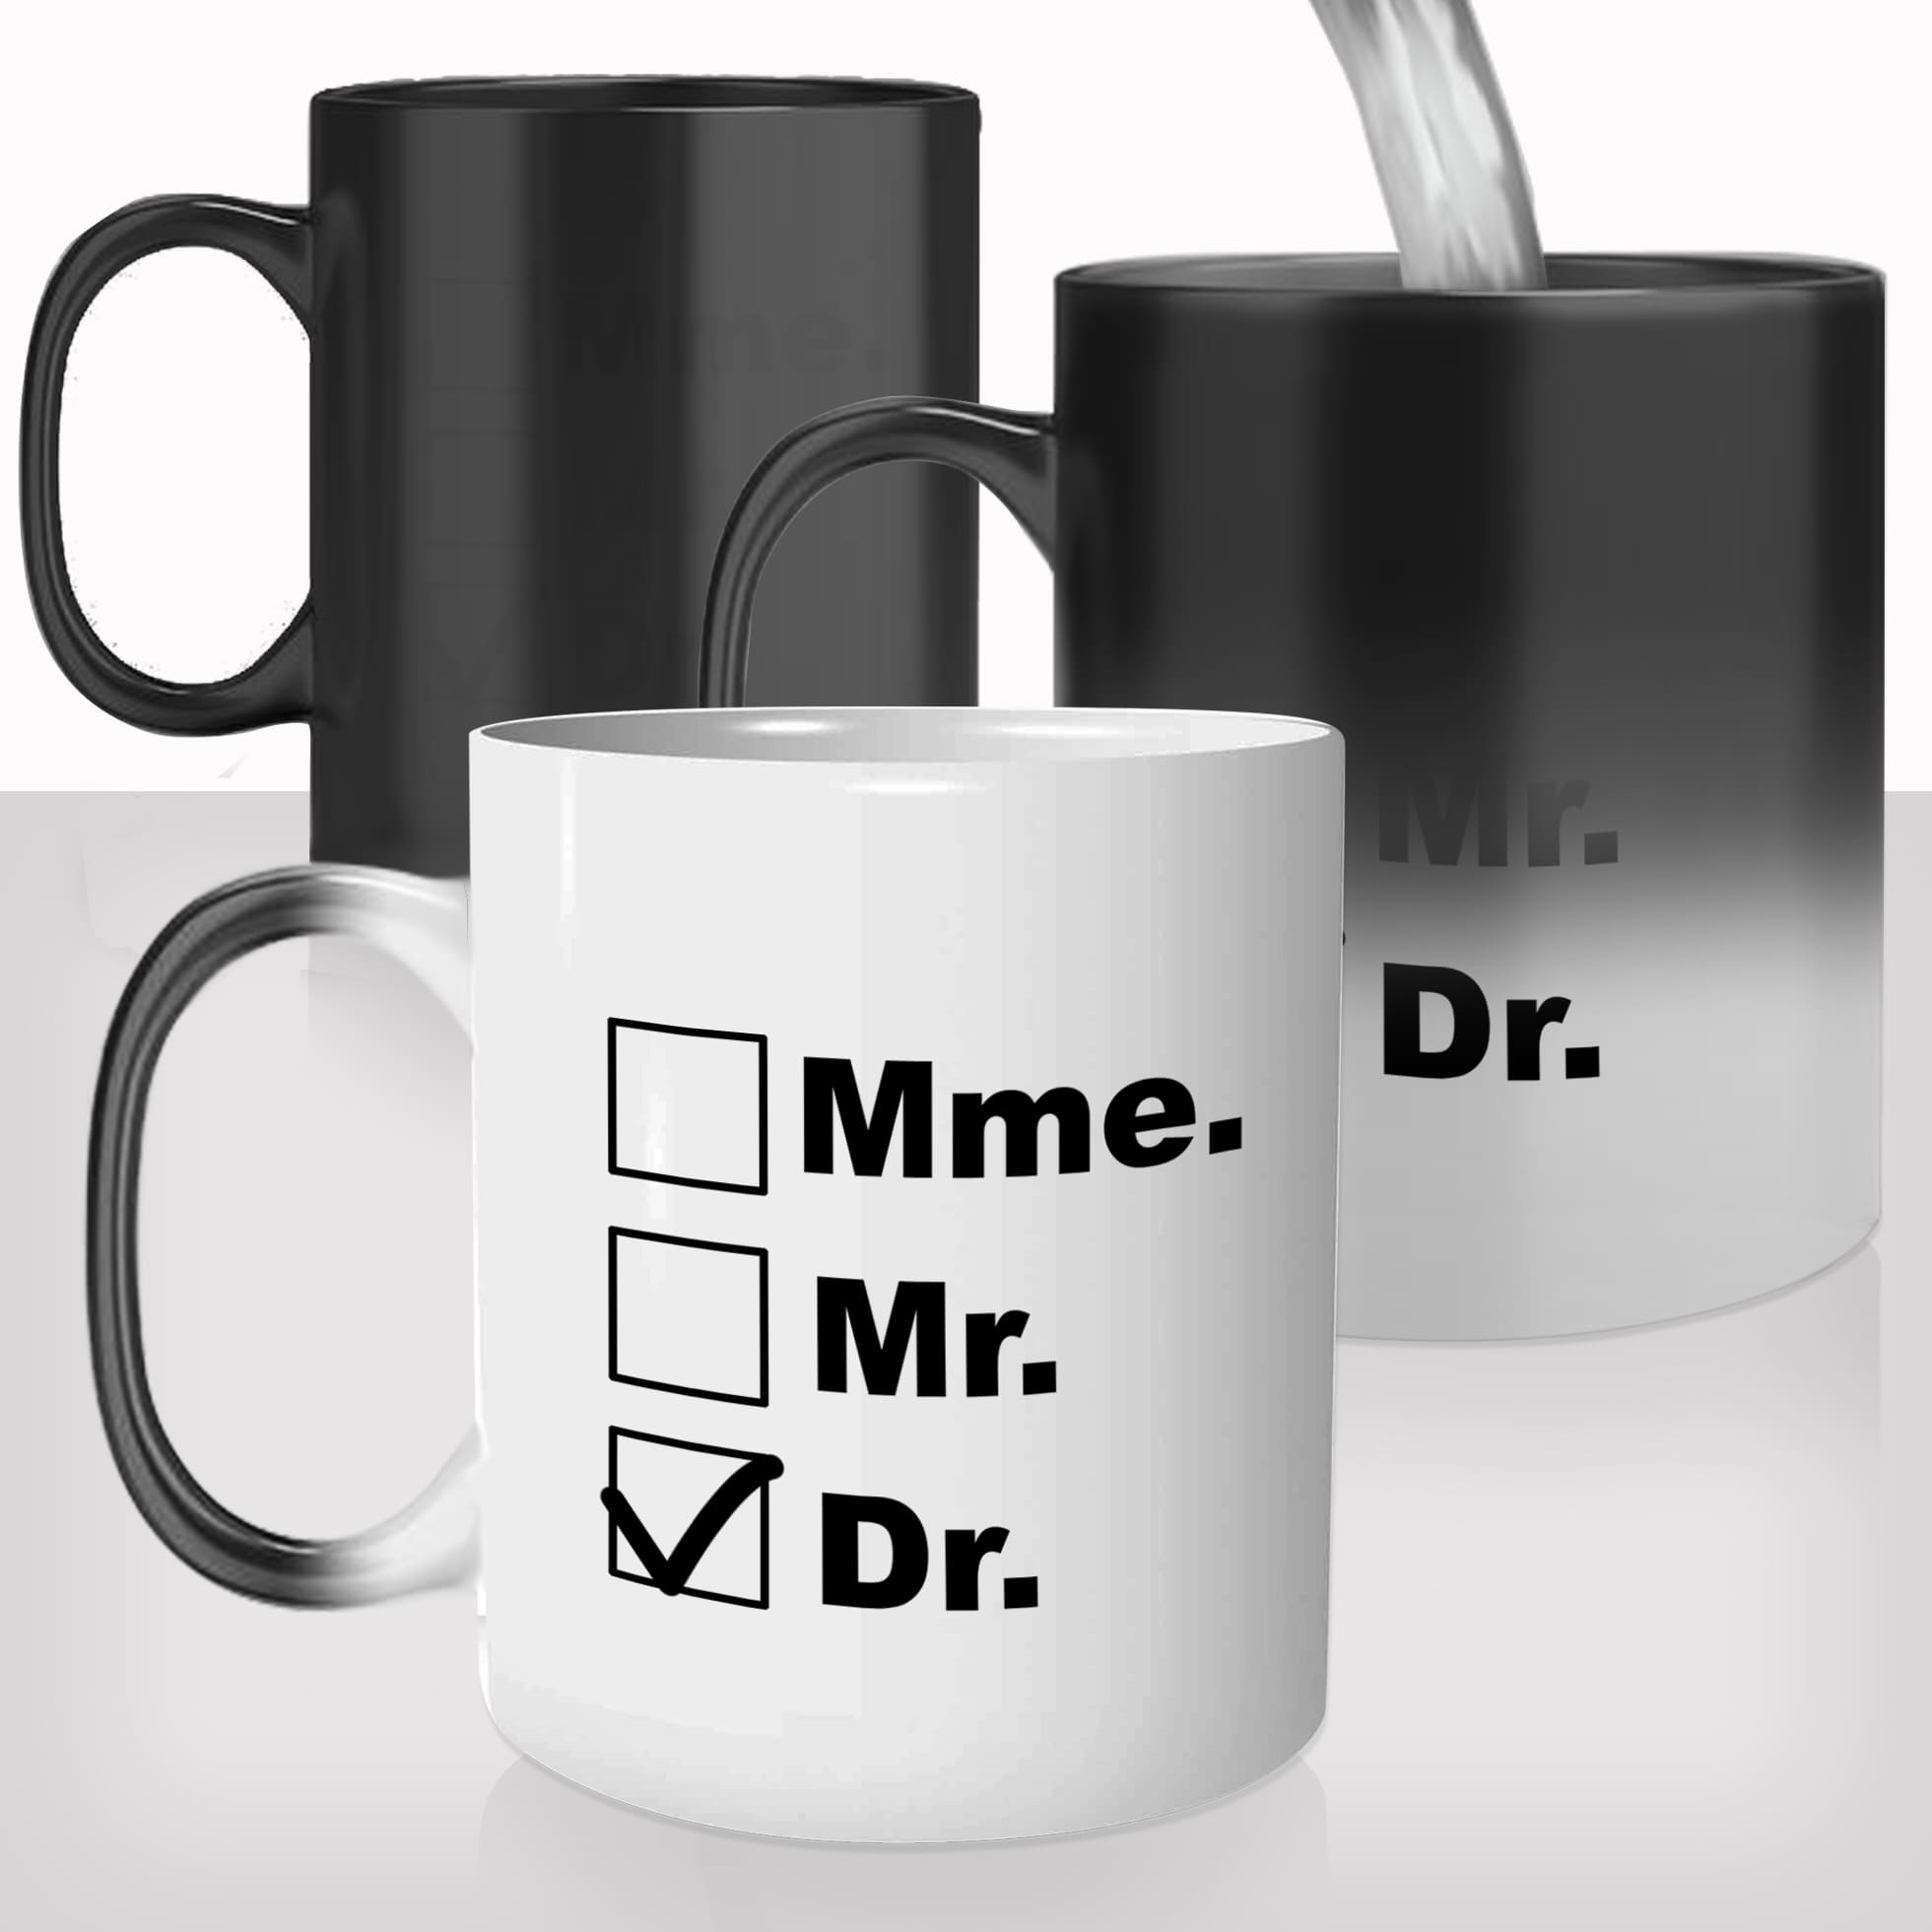 mug-magique-tasse-magic-thermo-reactif-chauffant-metier-madame-monsieur-docteur-mme-mr-dr-etudes-drole-cadeau-fun-original